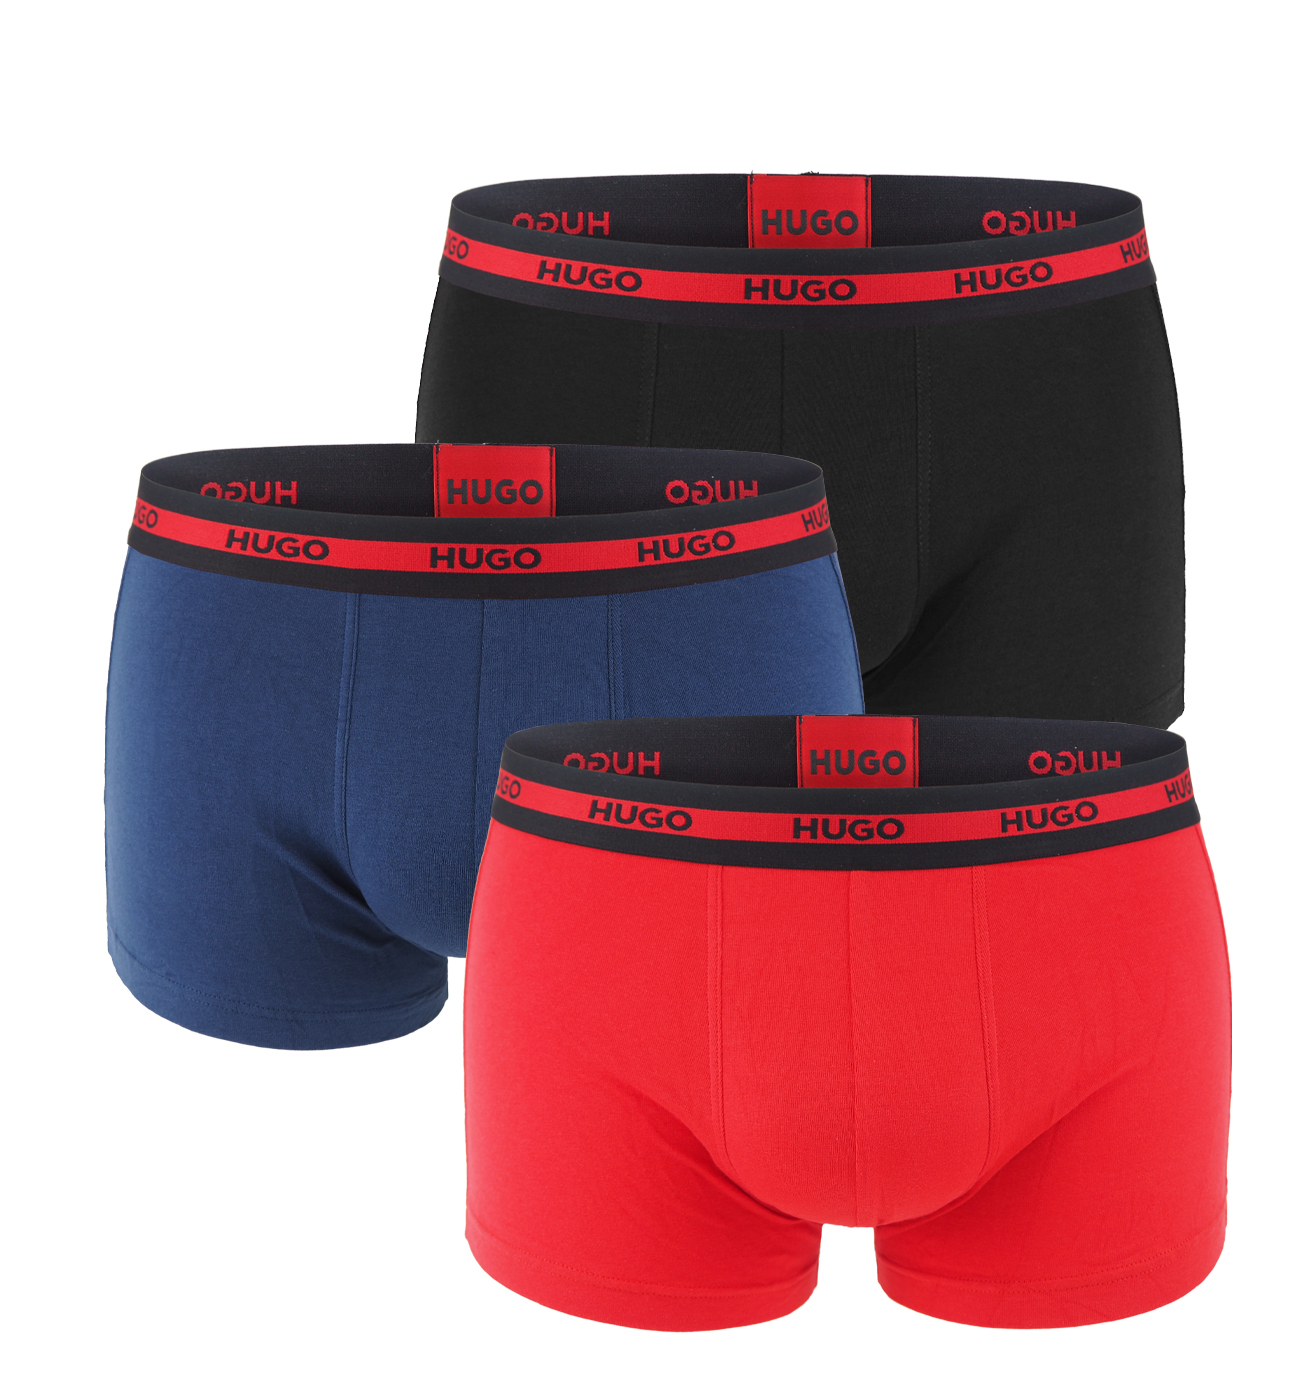 HUGO - boxerky 3PACK cotton stretch dark & red color combo z organickej bavlny - limitovaná fashion edícia (HUGO BOSS)